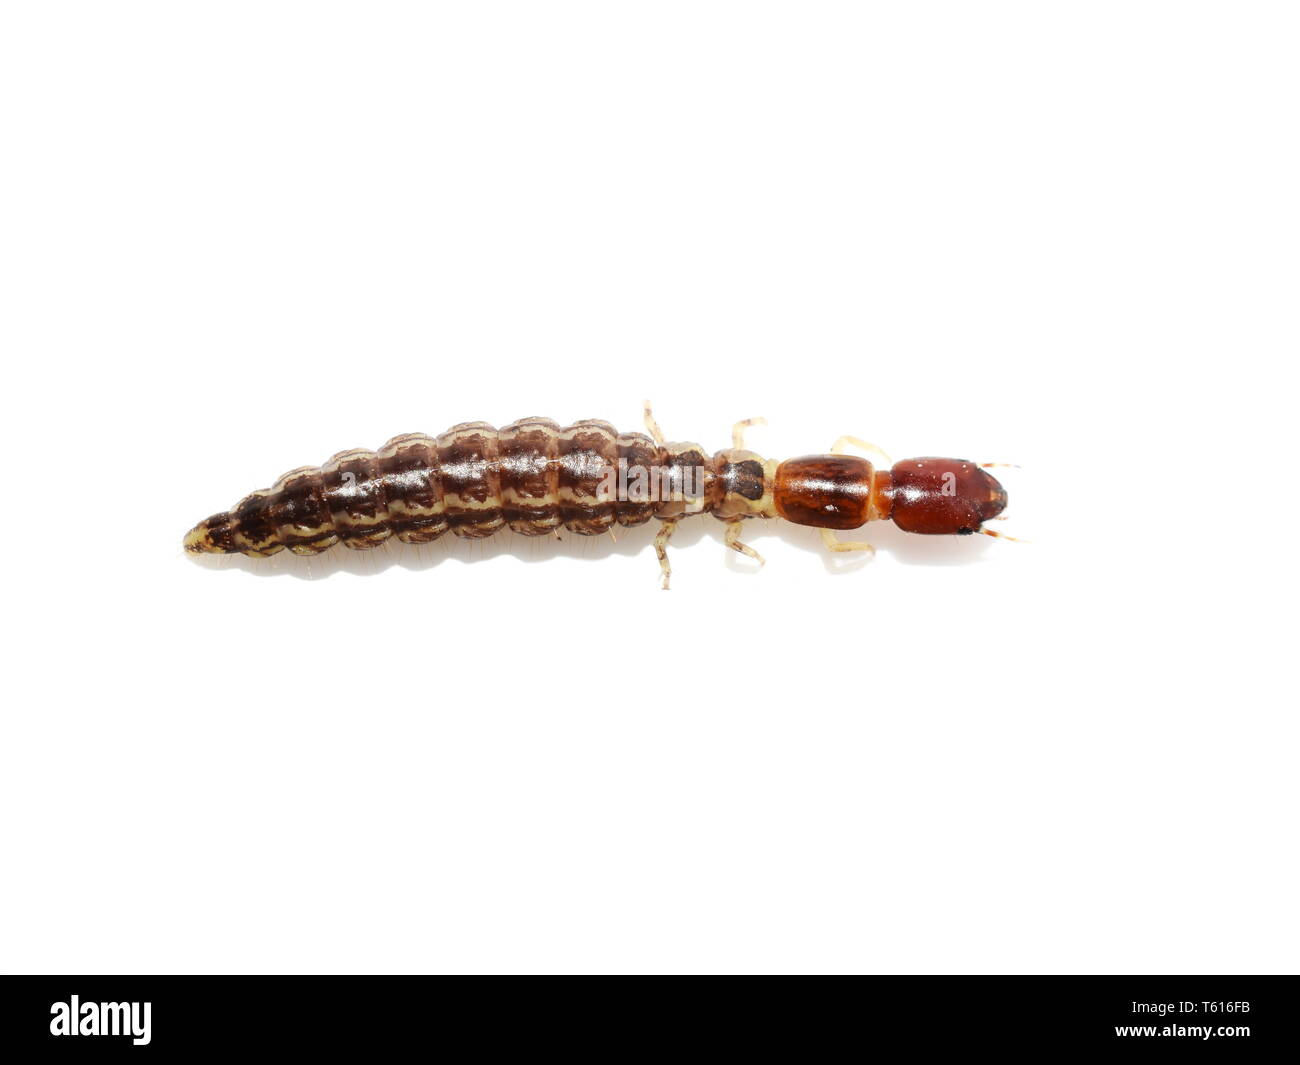 Rhapidioptera snakefly larvae isolated on white background Stock Photo